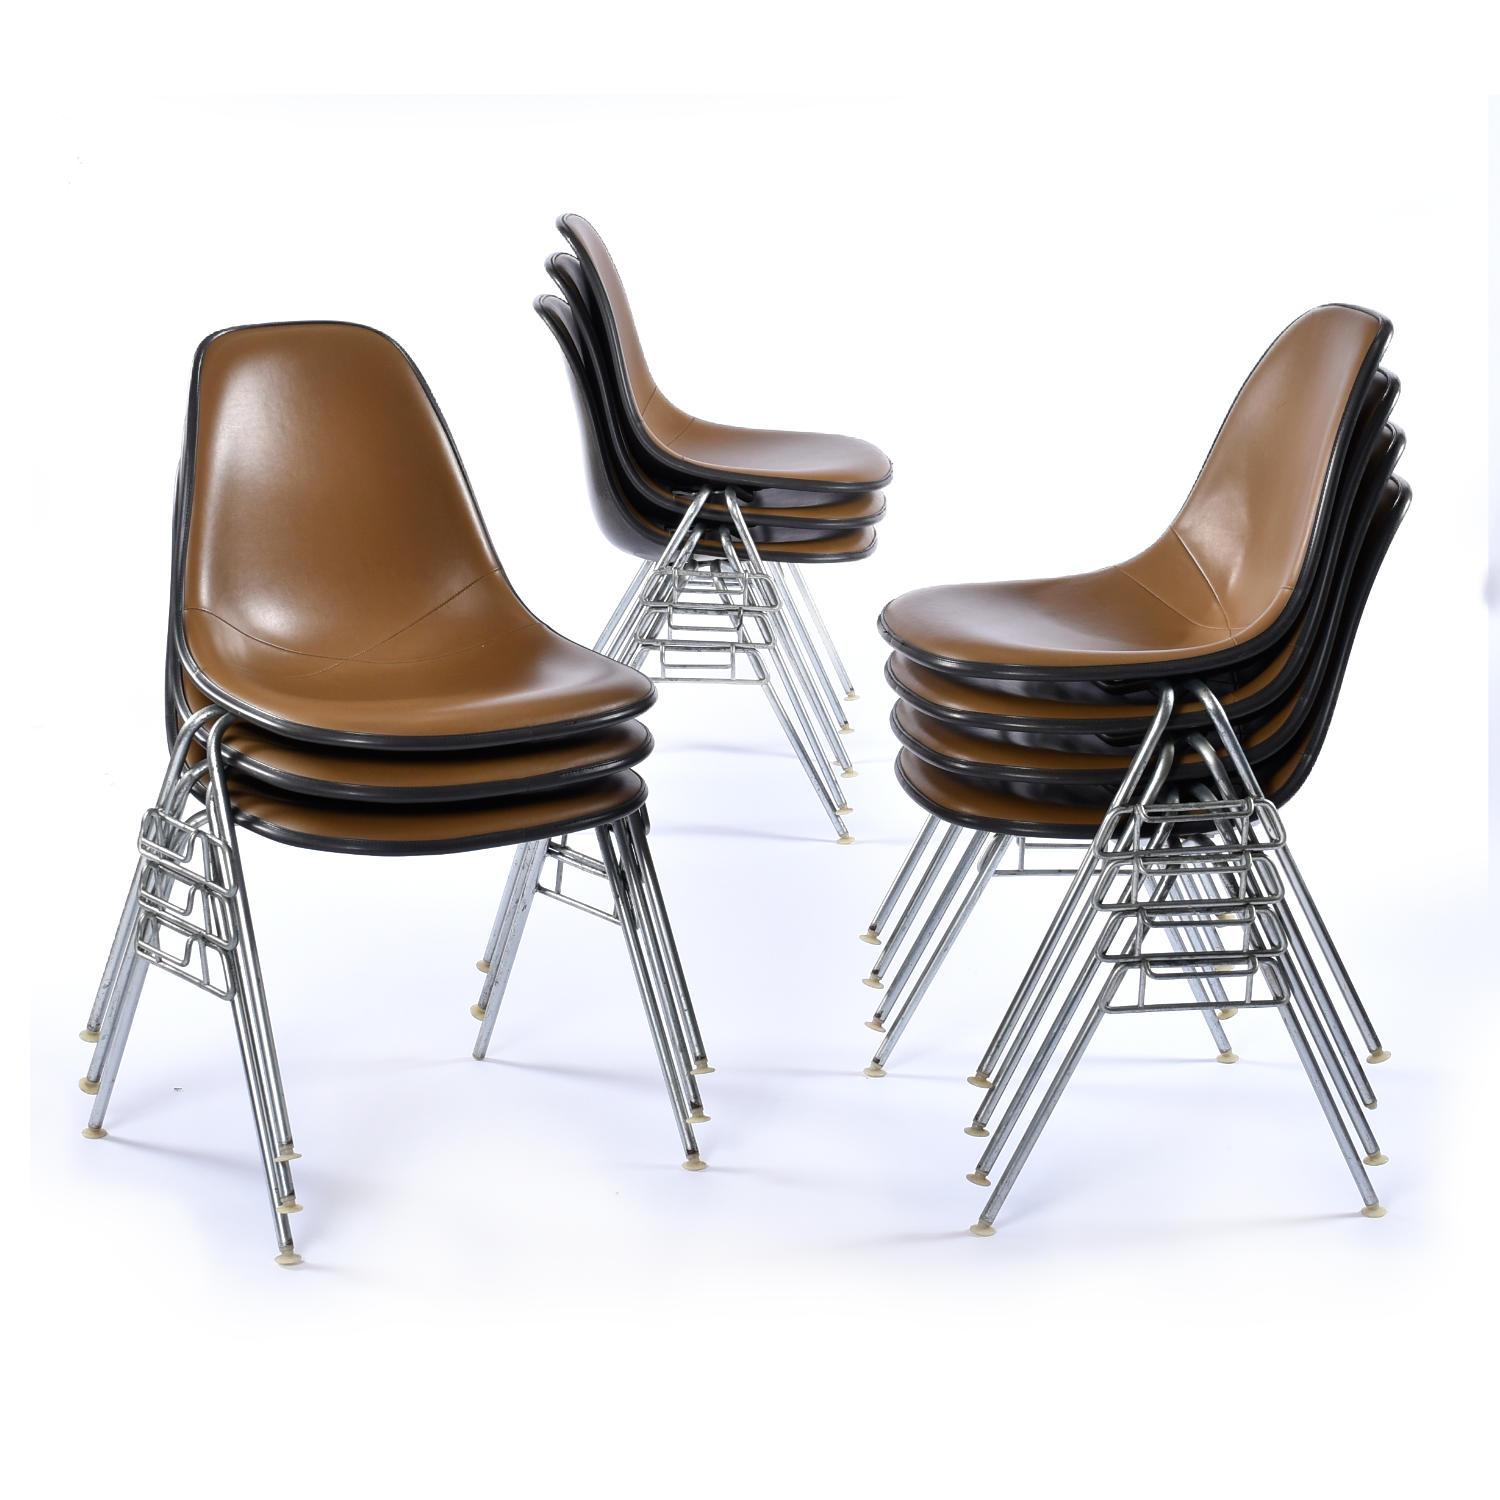 Verkauft in einer Gruppe von 10 Stück. Wir haben 20 Stühle zur Verfügung. Kontaktieren Sie uns, wenn Sie eine individuelle Menge benötigen.

Stapelbare Eames-Glasfaserschalenstühle mit original braunen Naugahyde-Pads. Die berühmten Charles und Ray